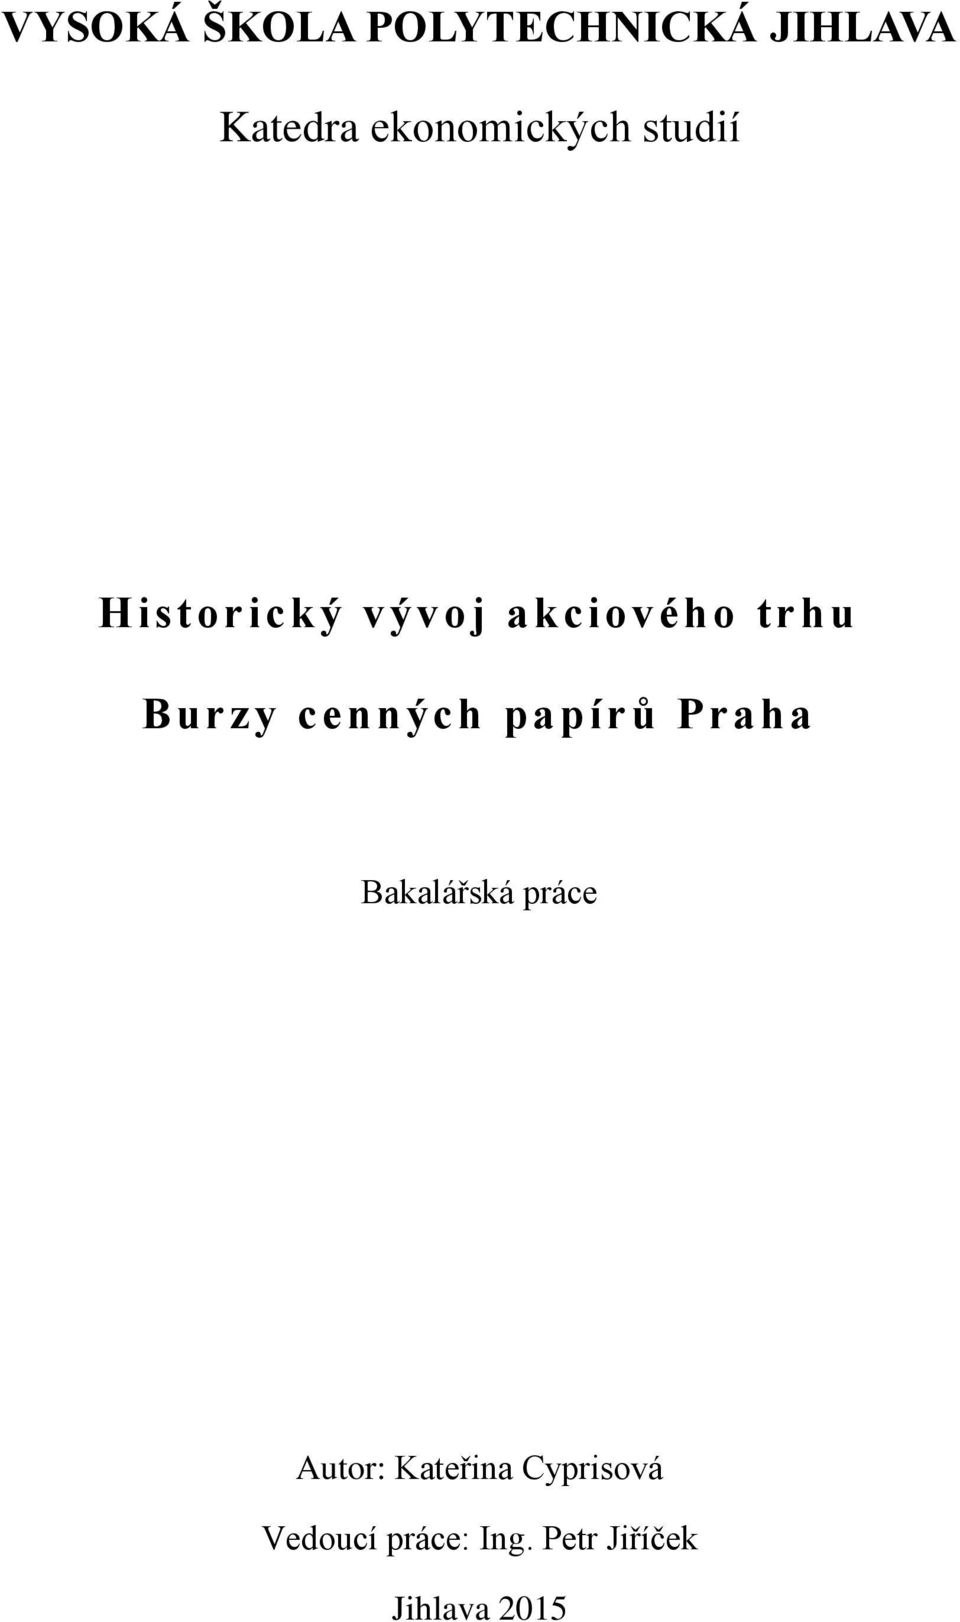 Burzy cenných papírů Praha Bakalářská práce Autor: